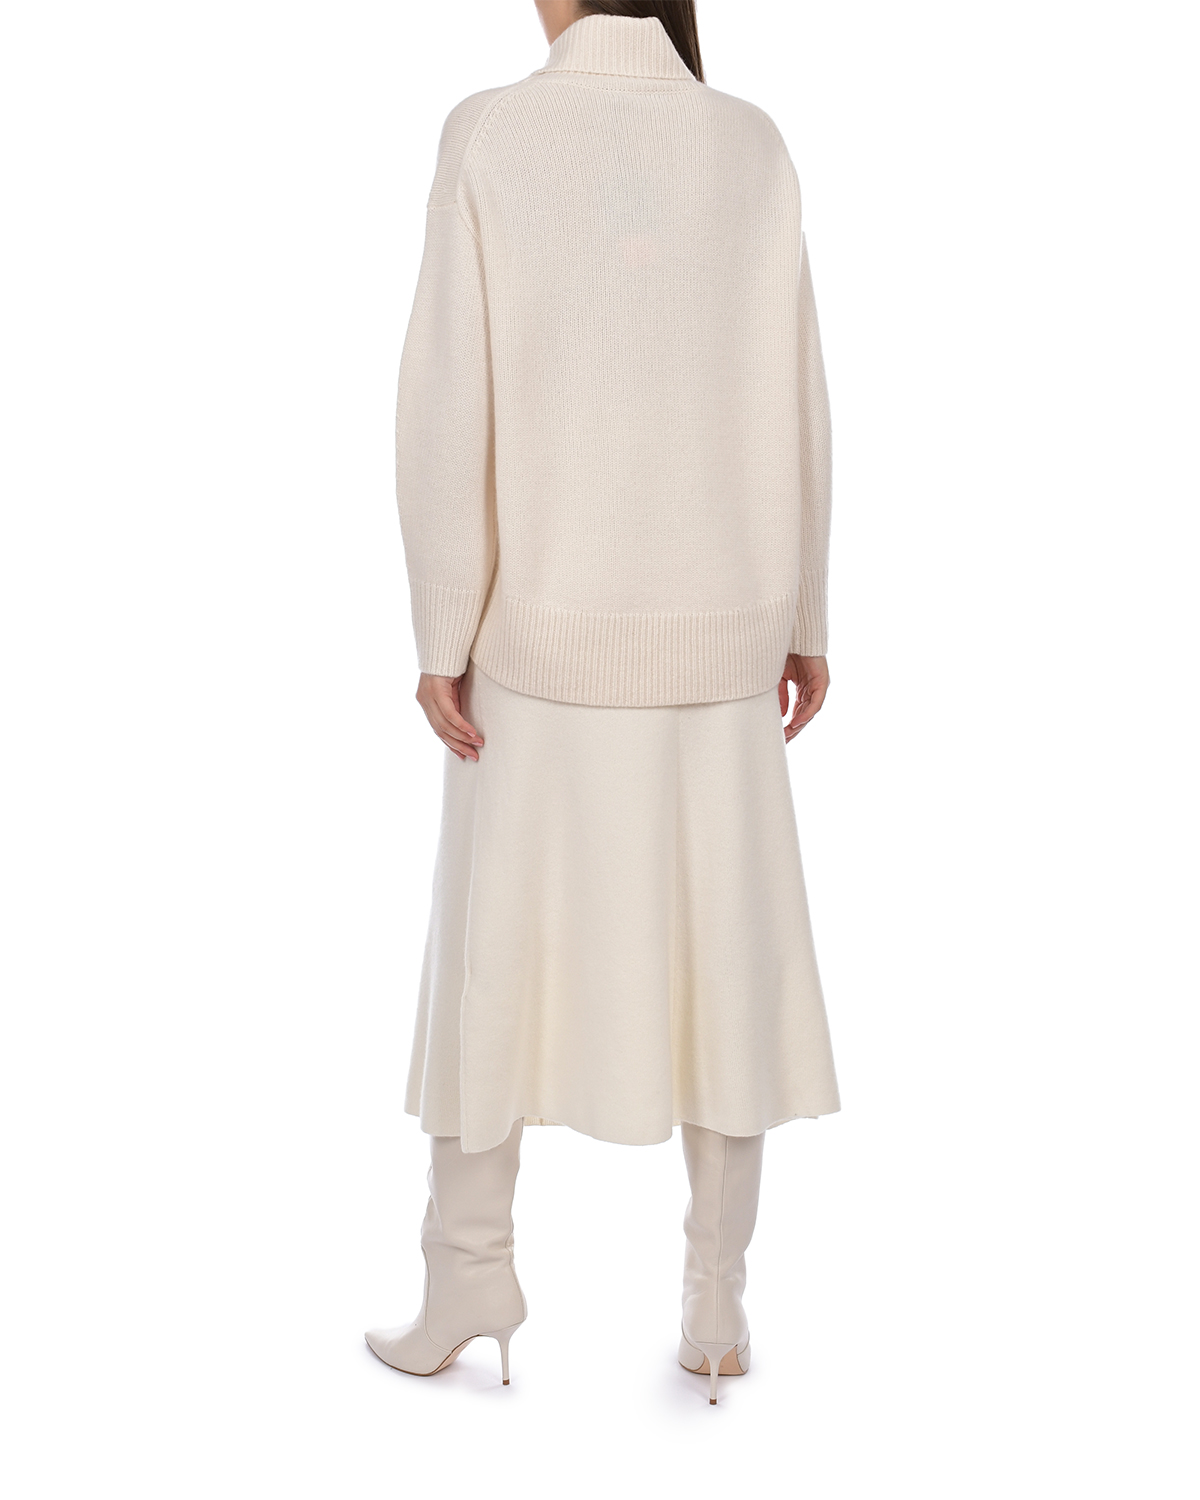 Кашемировый свитер молочного цвета Arch4, размер 38 - фото 3